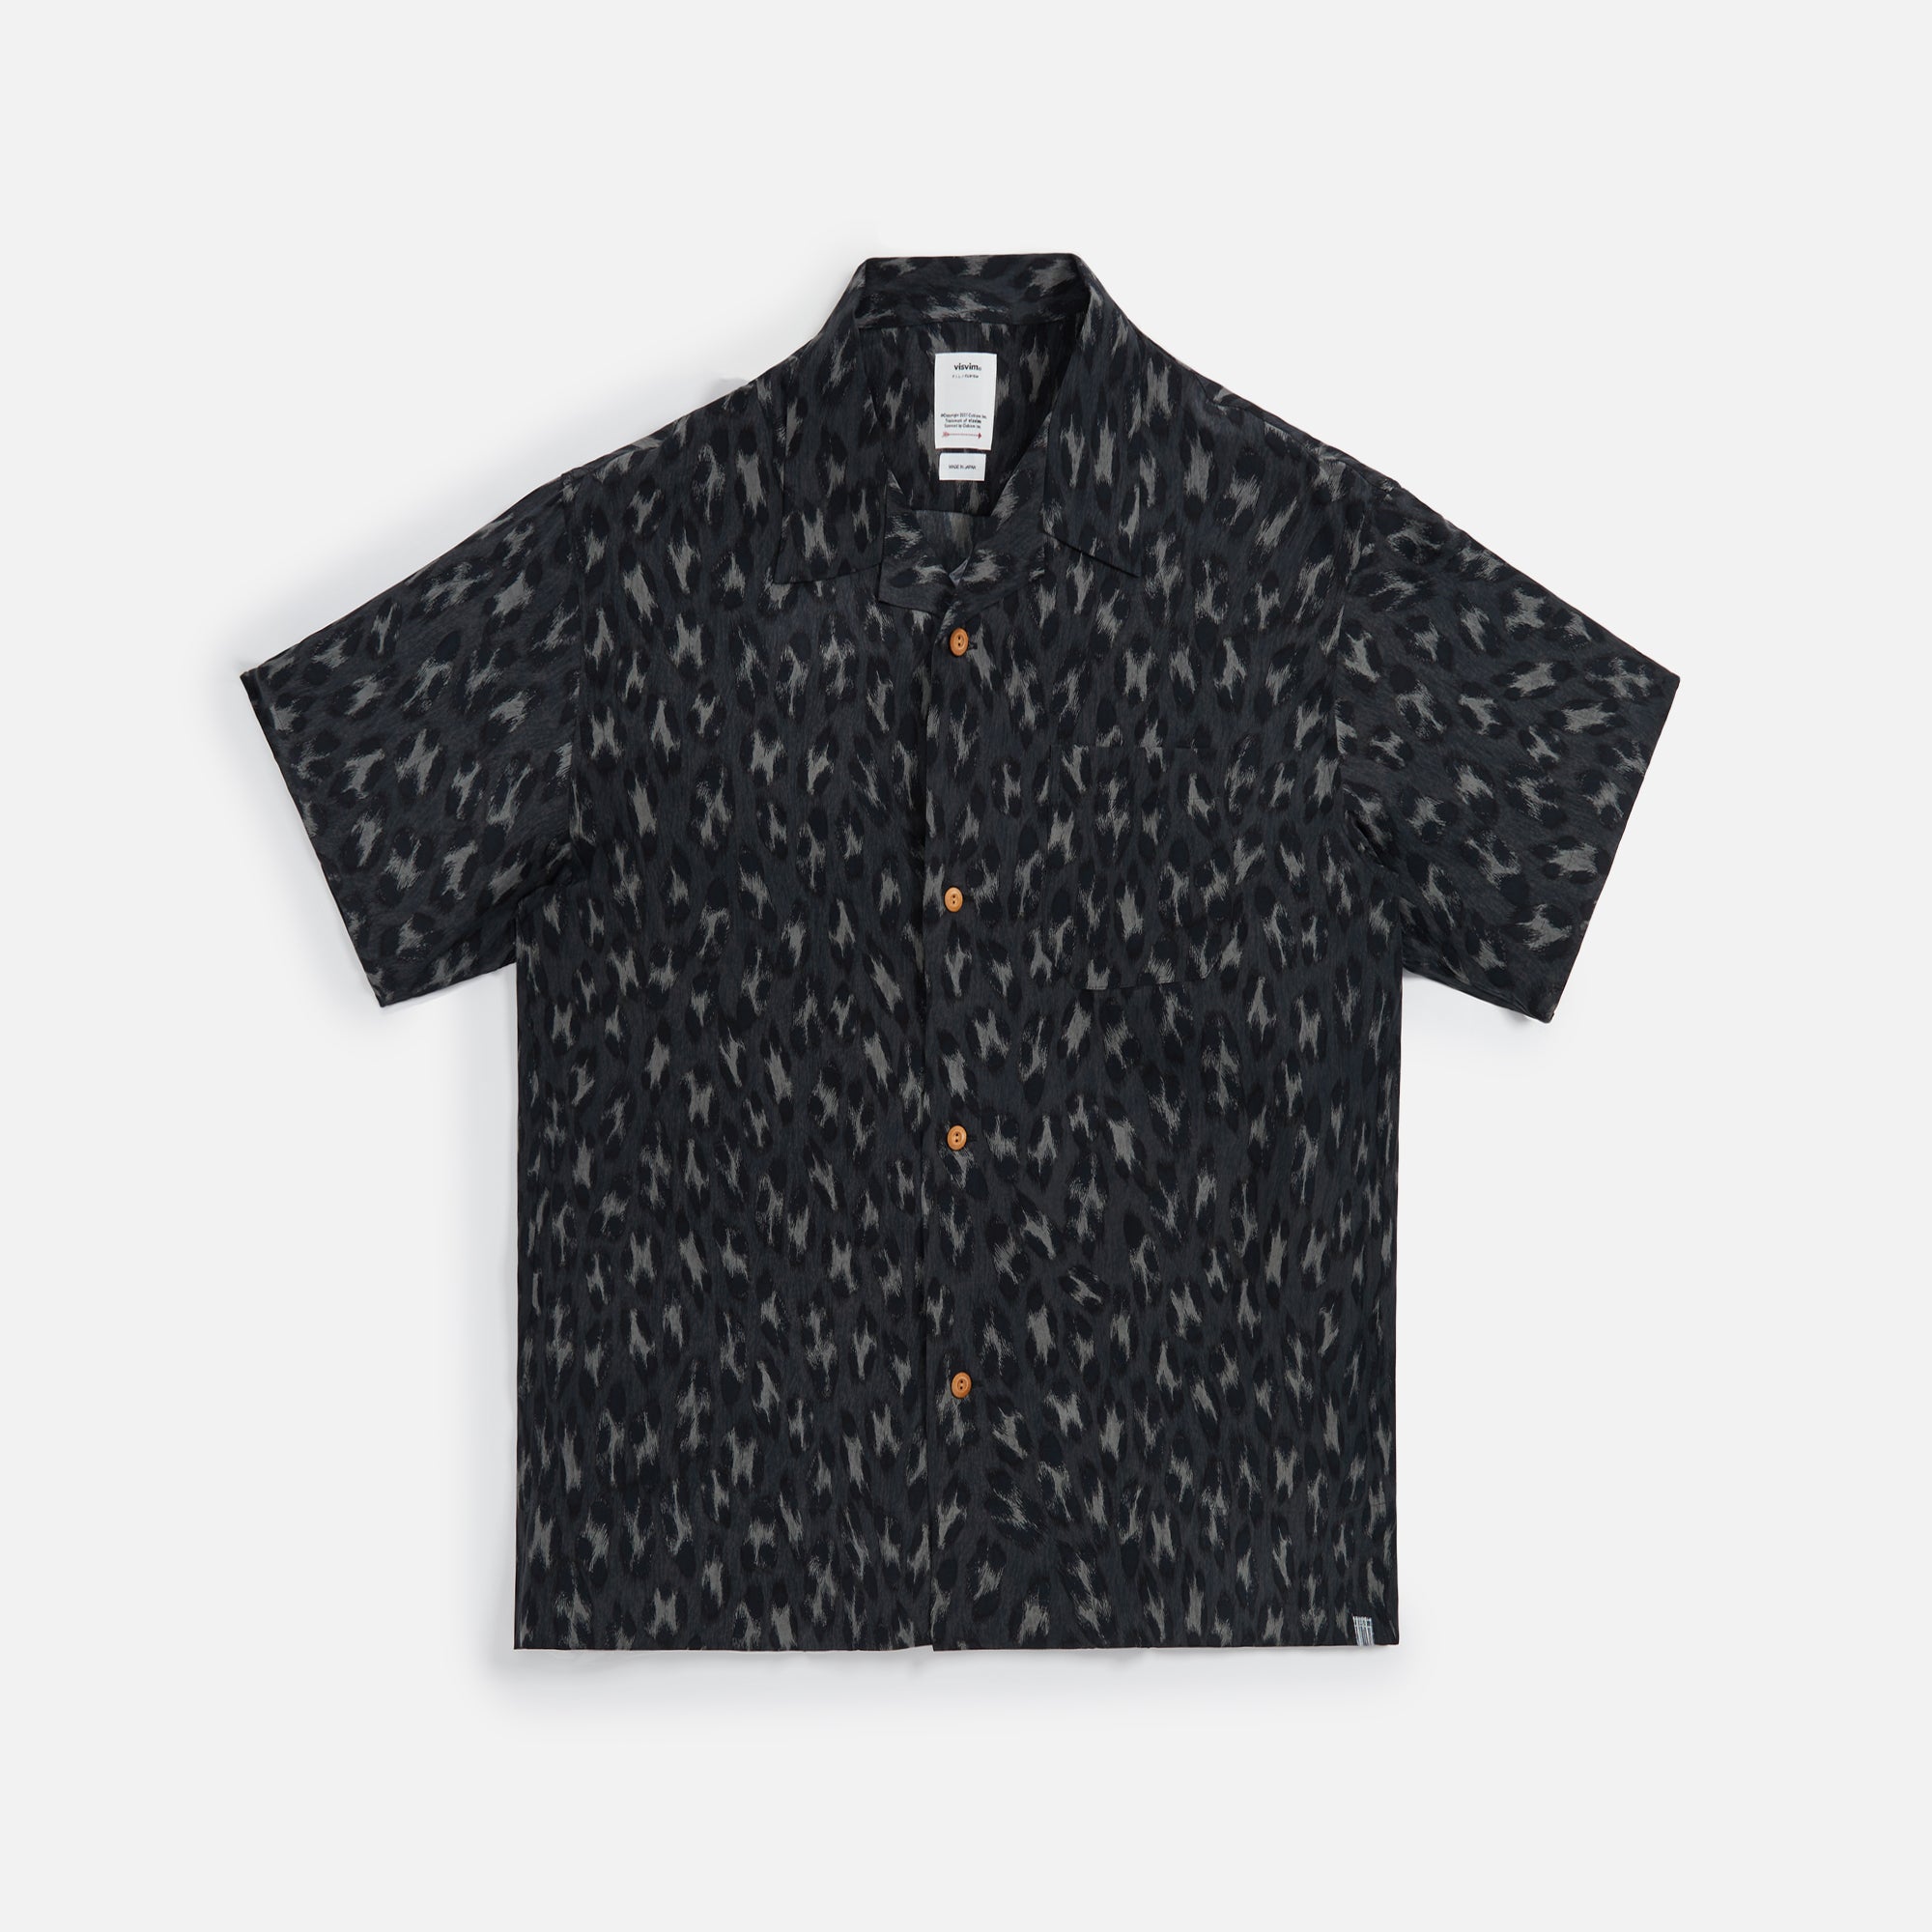 Visvim Caban Leopard Shirt - Black – Kith